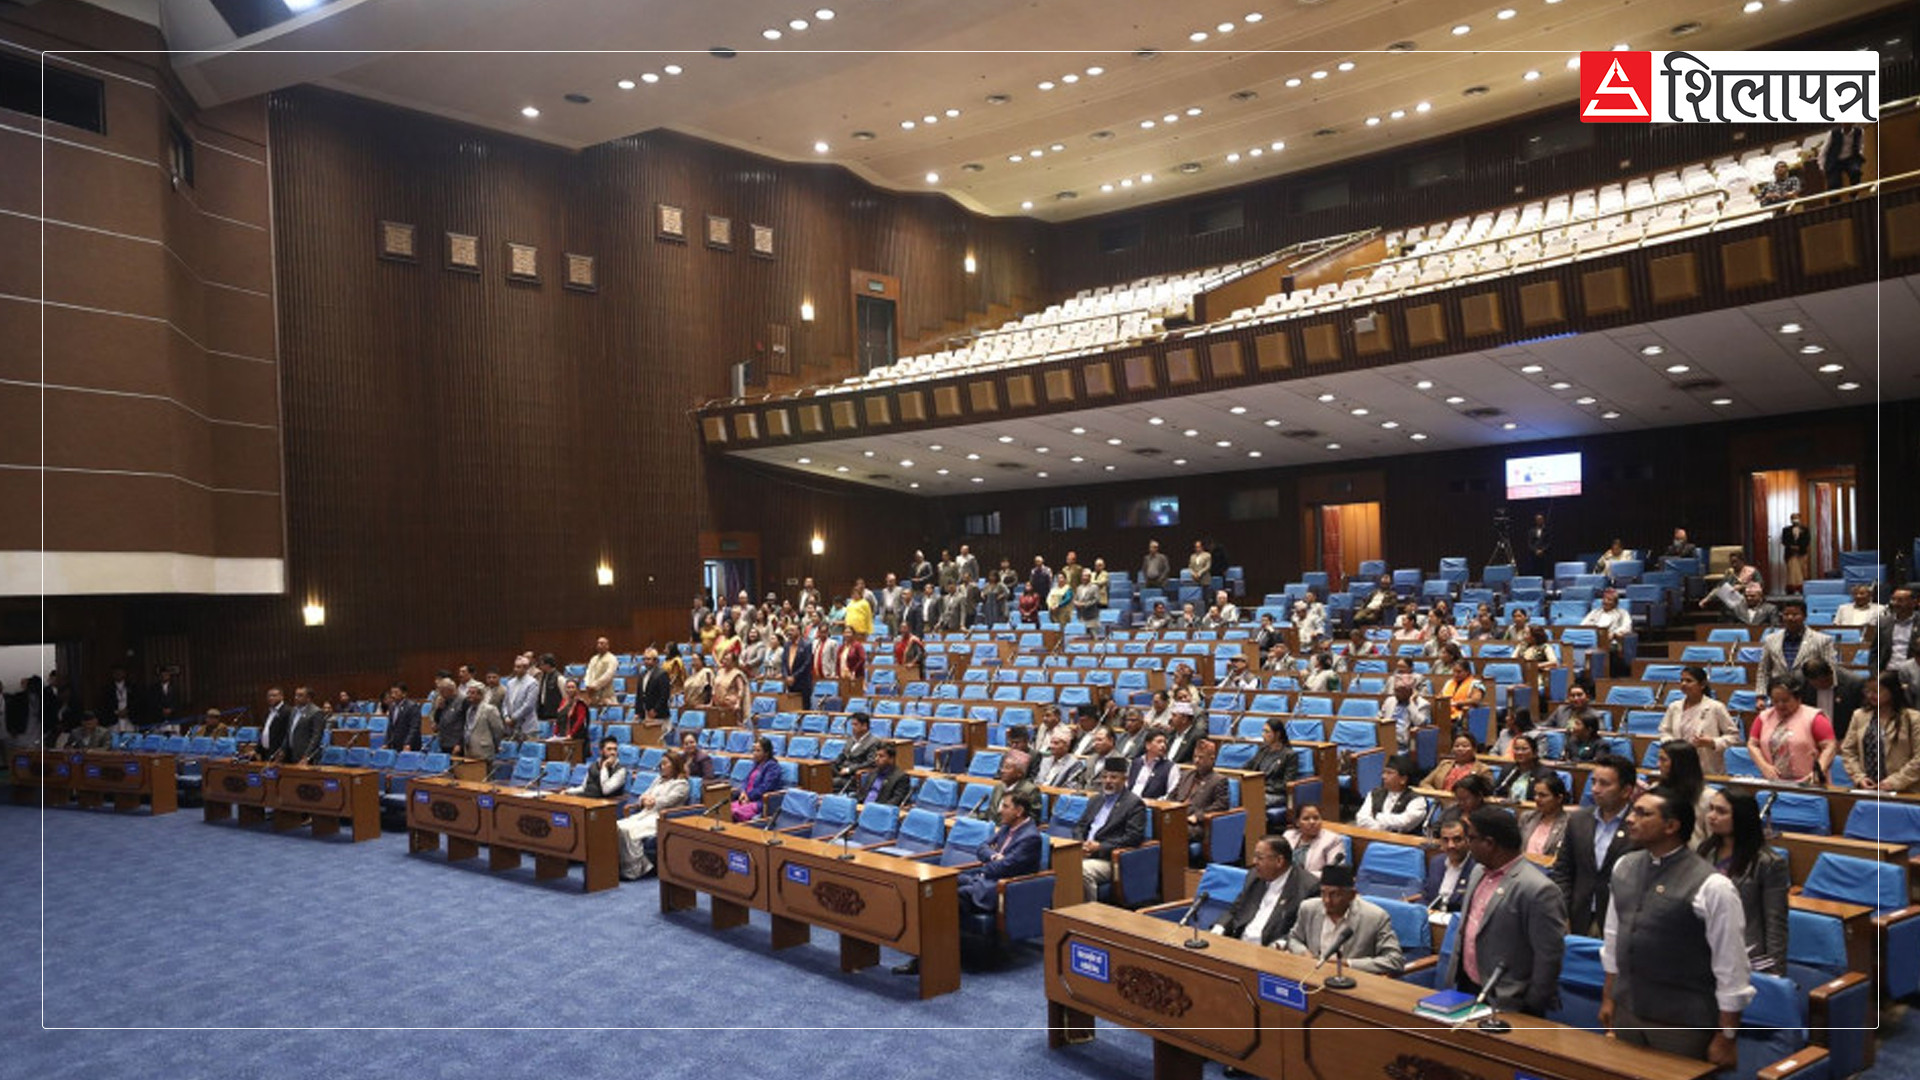 प्रतिनिधिसभाको बैठक बस्दैः कांग्रेसको अडान कायमै, गृहमन्त्रीले विधेयक प्रस्तुत गर्ने सम्भावित कार्यसूची